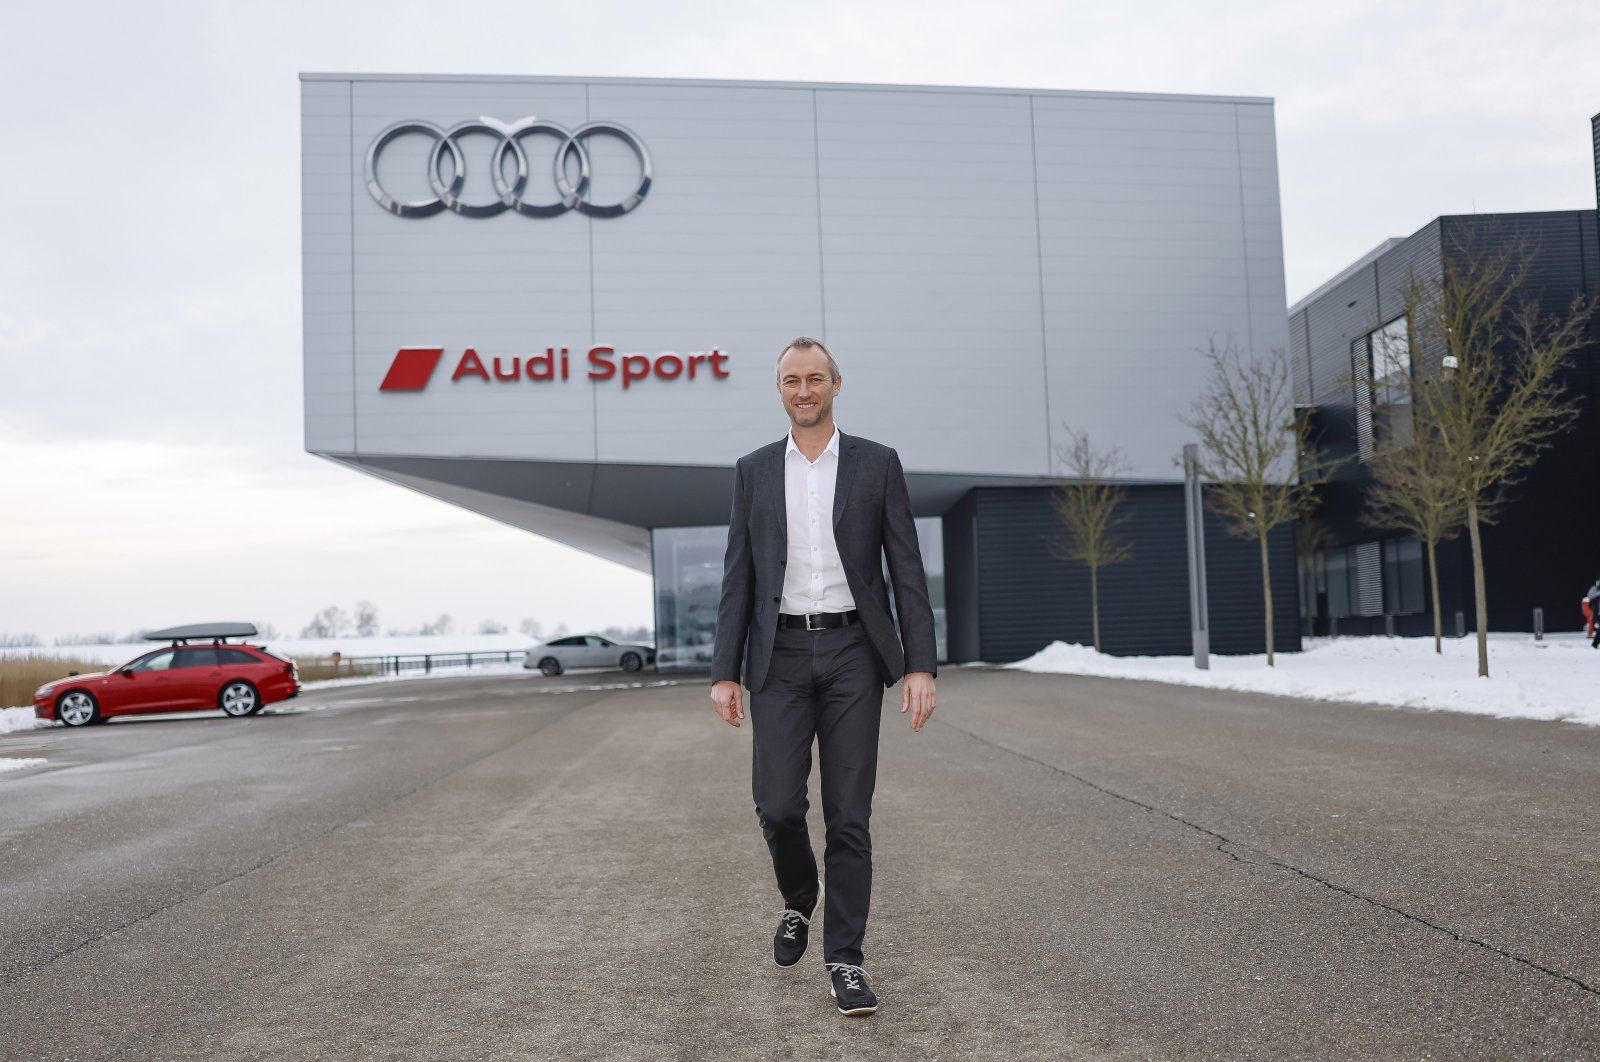 Audi strebt F1-Siege in 3 Jahren an, optimistisch in Bezug auf die Veränderungen im Jahr 2026